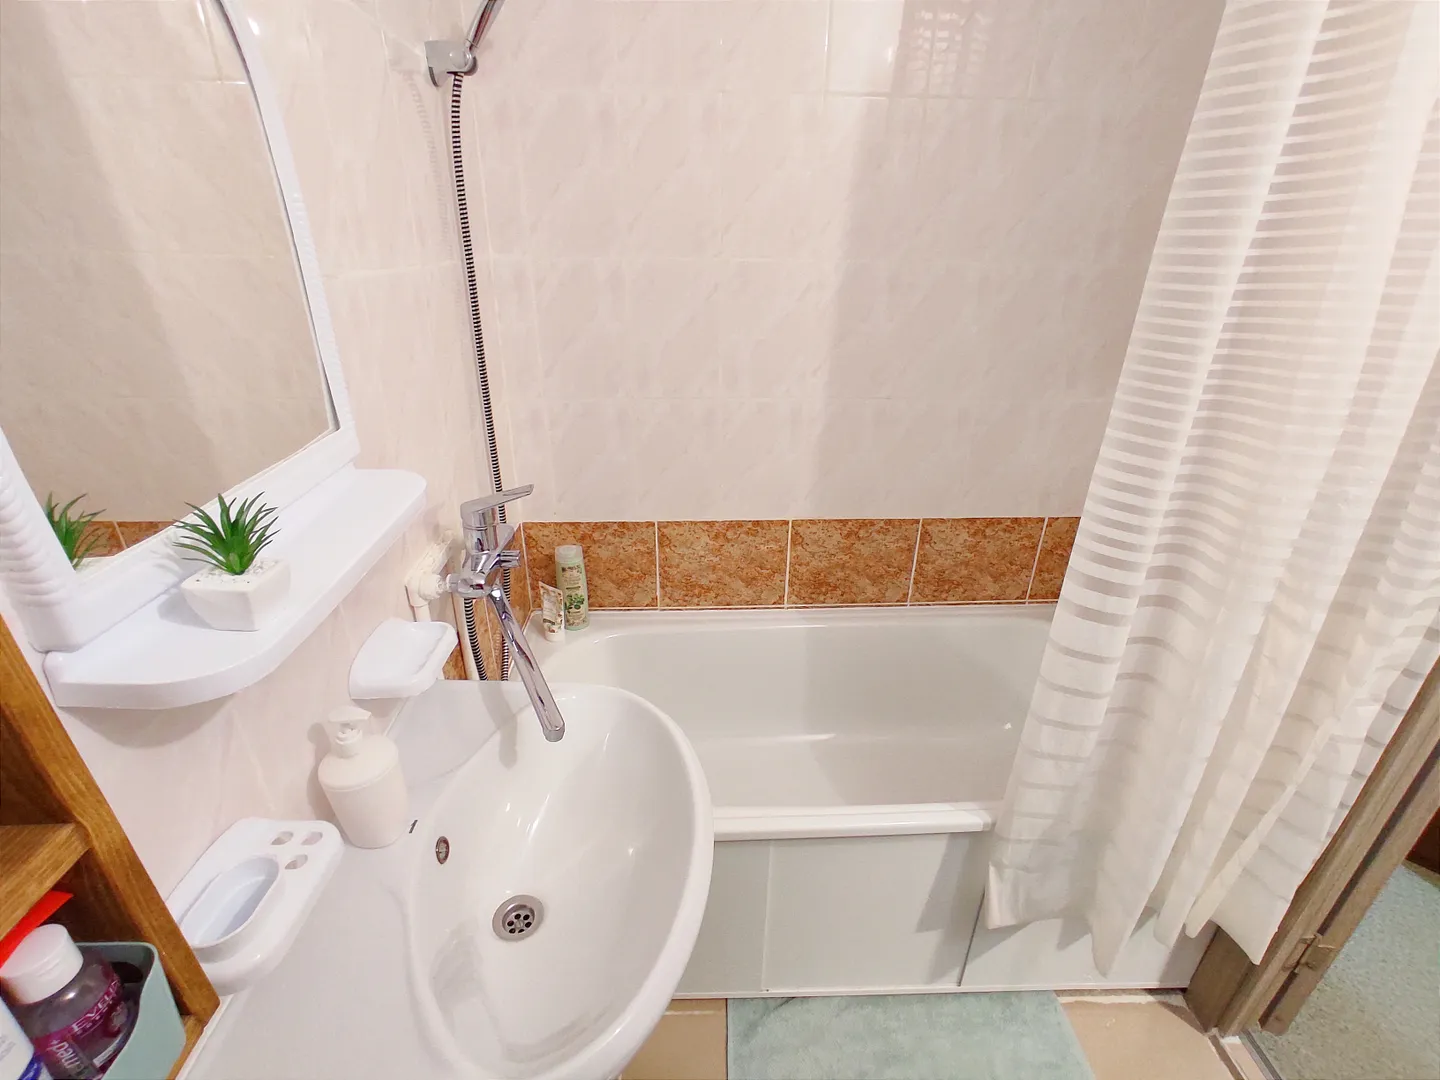 Полноценная ванная может использоваться не только в целях гигиены, но и релаксации